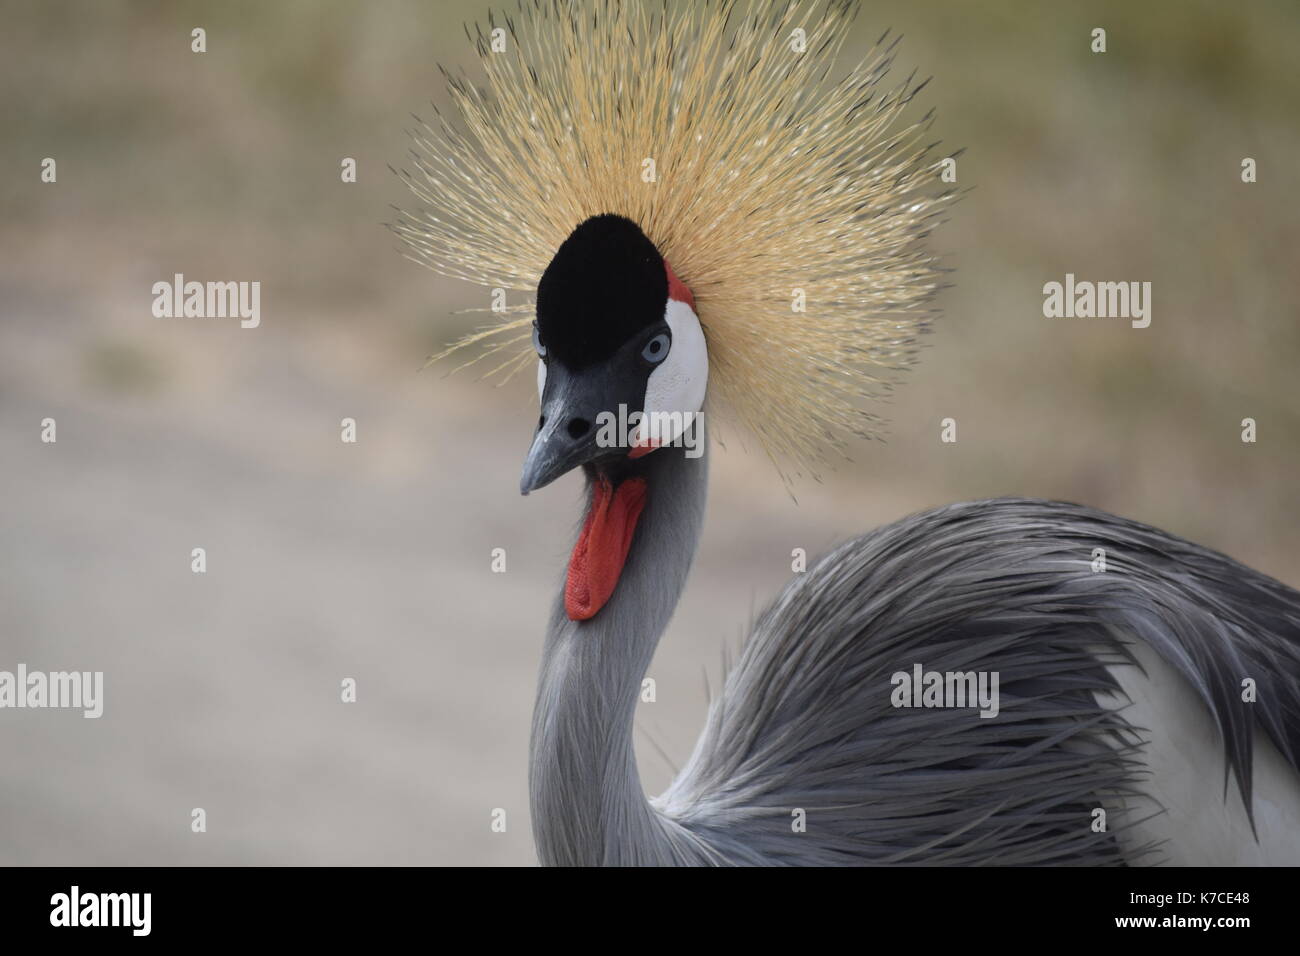 Bird roams with big hair Stock Photo